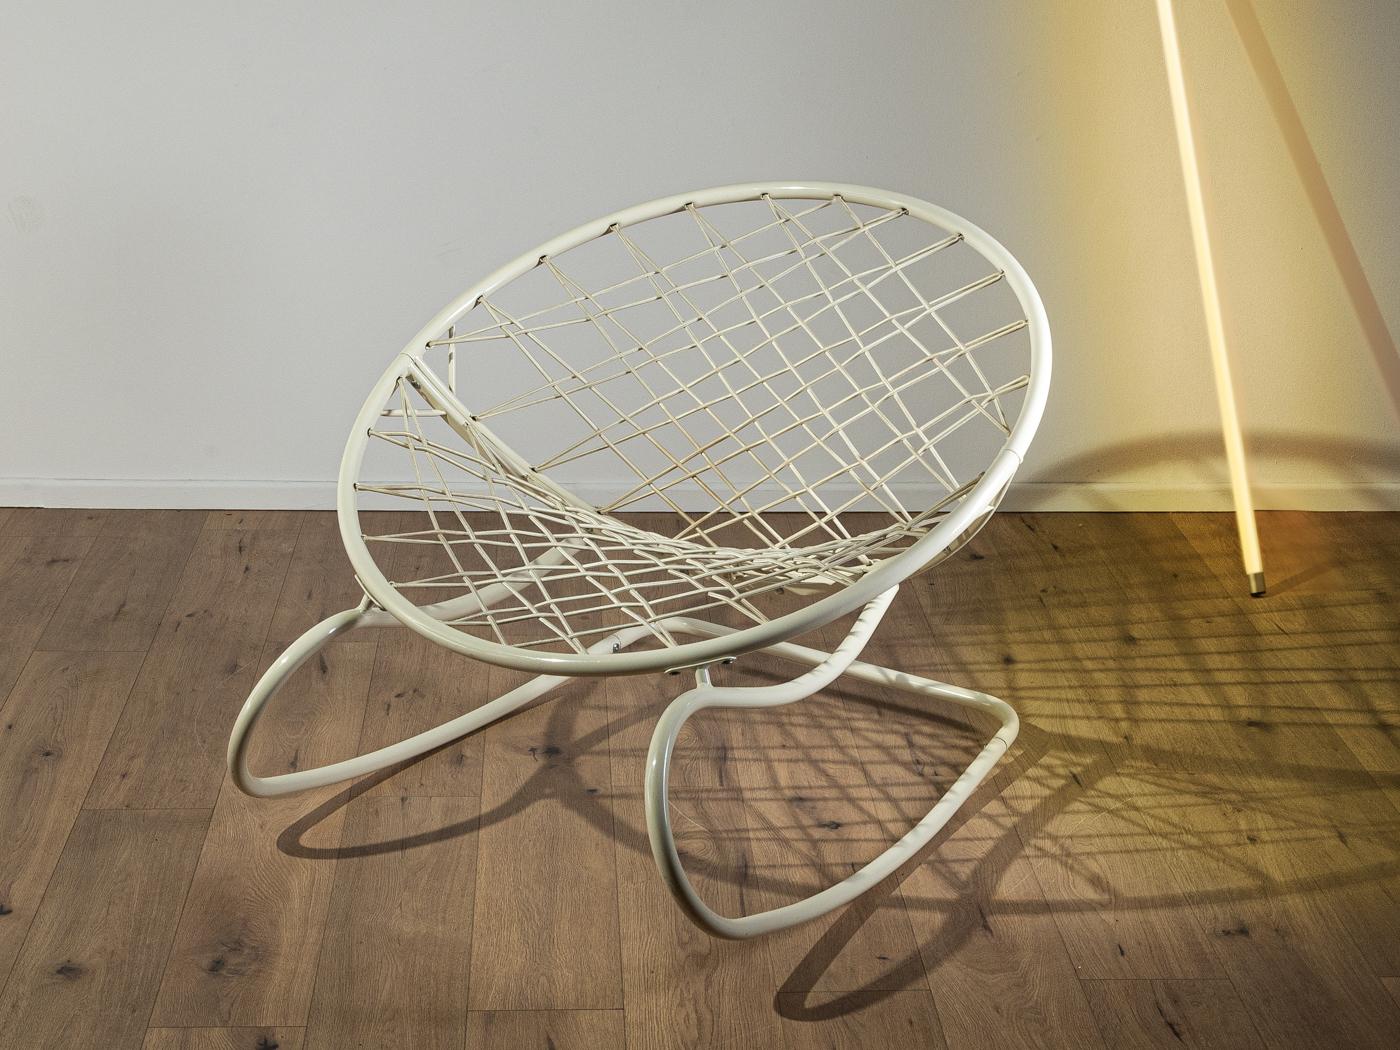 Légendaire fauteuil à bascule AXVALL dans le style de l'ère spatiale par Niels Gammelgaard pour Ikea dans les années 2000. Structure en métal laqué blanc avec assise en forme de filet constituée de cordes en caoutchouc tendues.

Caractéristiques de